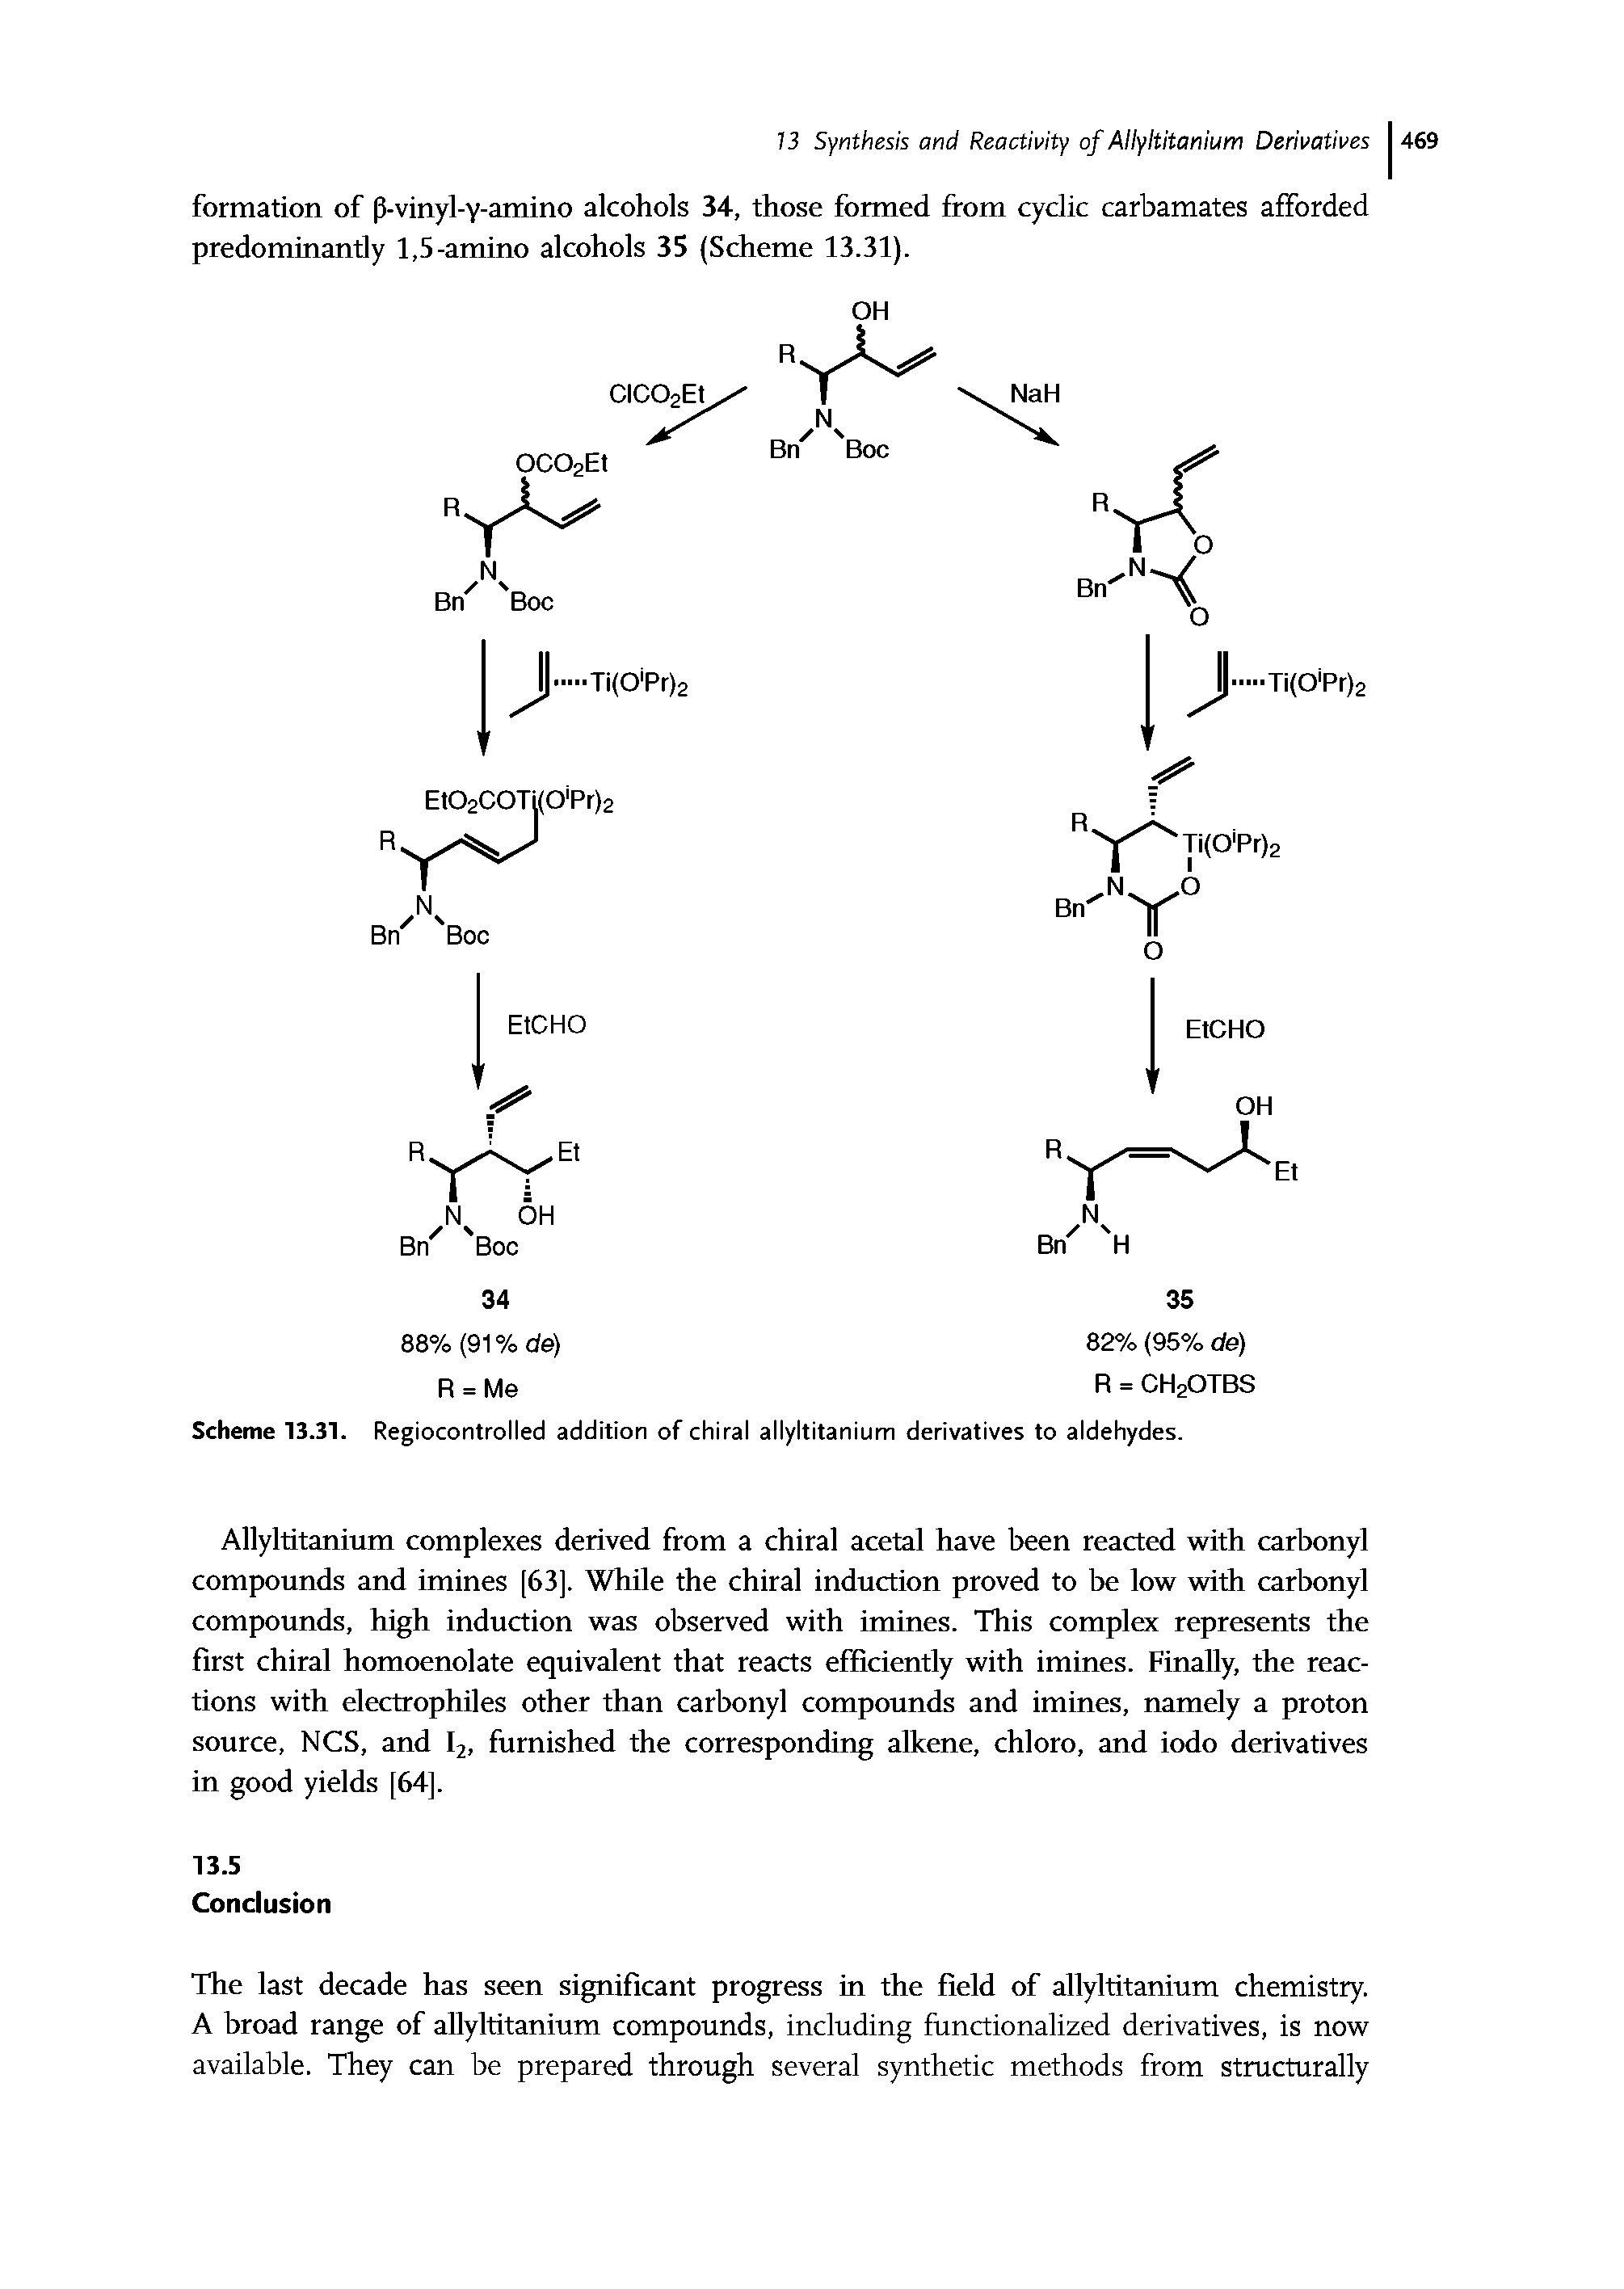 Scheme 13.31. Regiocontrolled addition of chiral allyltitanium derivatives to aldehydes.